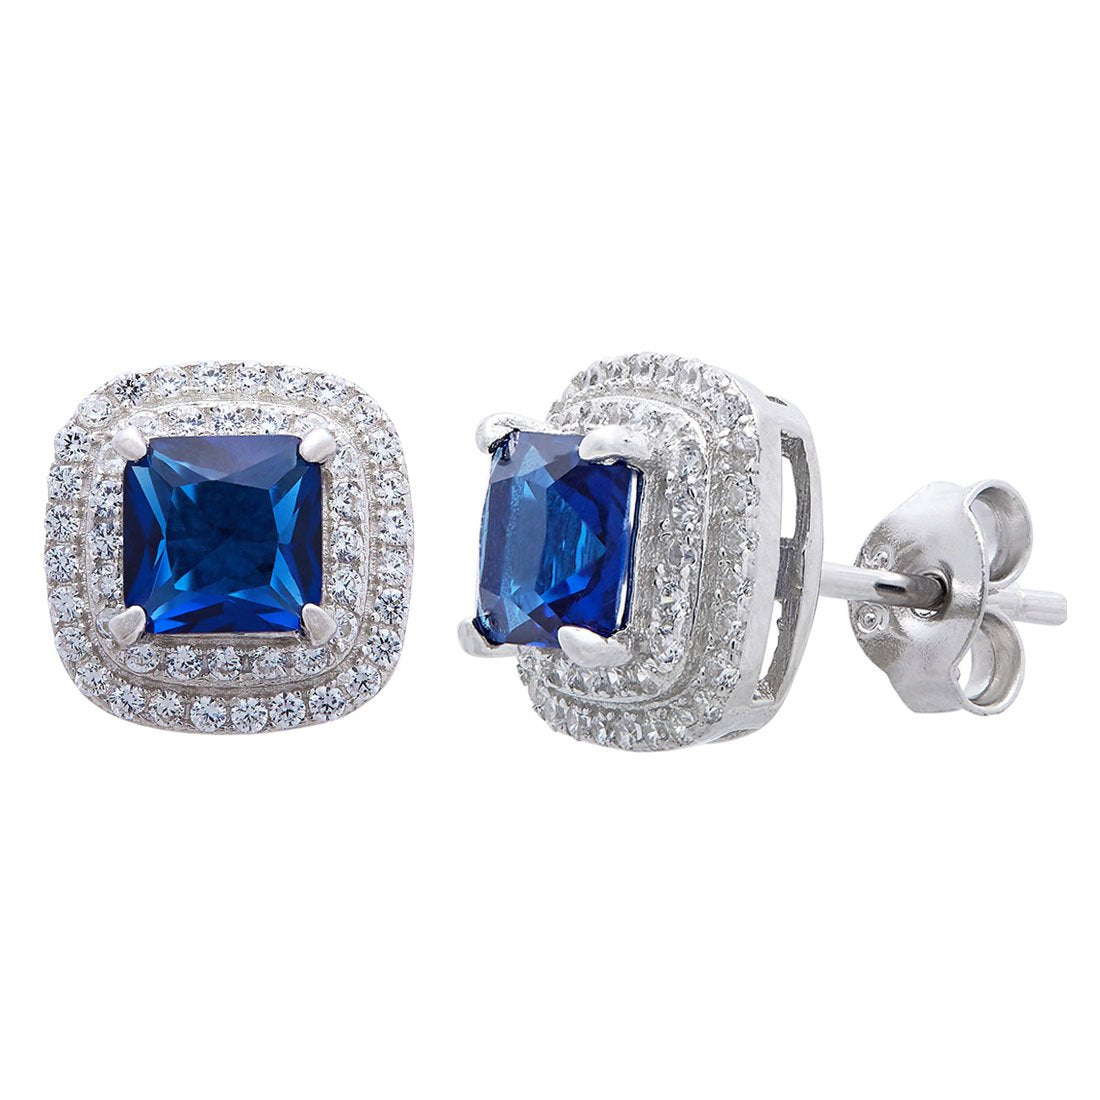 Blue Sapphire Cubic Zirconia Earrings in Sterling Silver Earrings Bevilles 